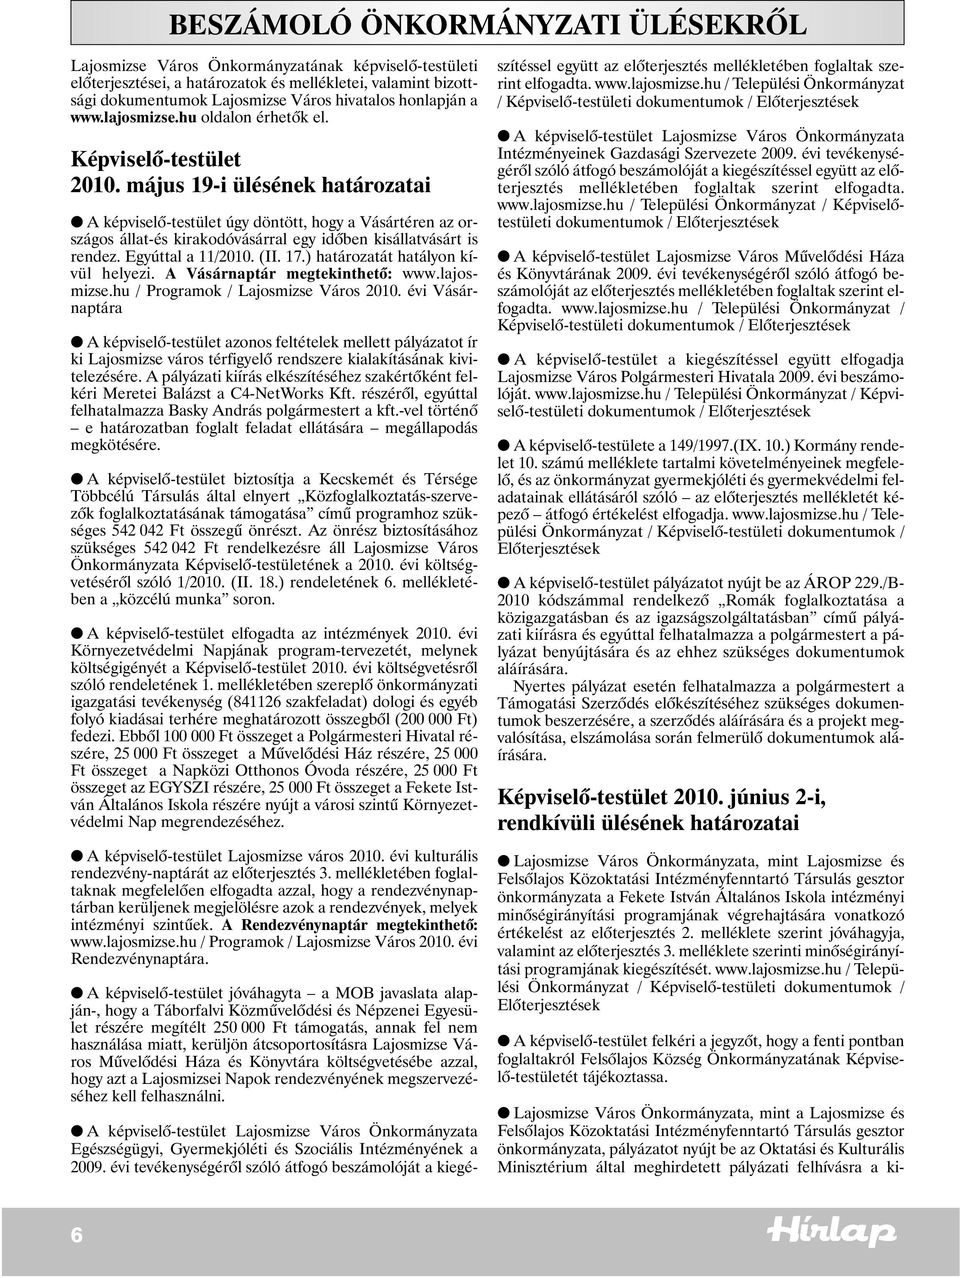 május 19-i ülésének határozatai A képviselõ-testület úgy döntött, hogy a Vásártéren az országos állat-és kirakodóvásárral egy idõben kisállatvásárt is rendez. Egyúttal a 11/2010. (II. 17.